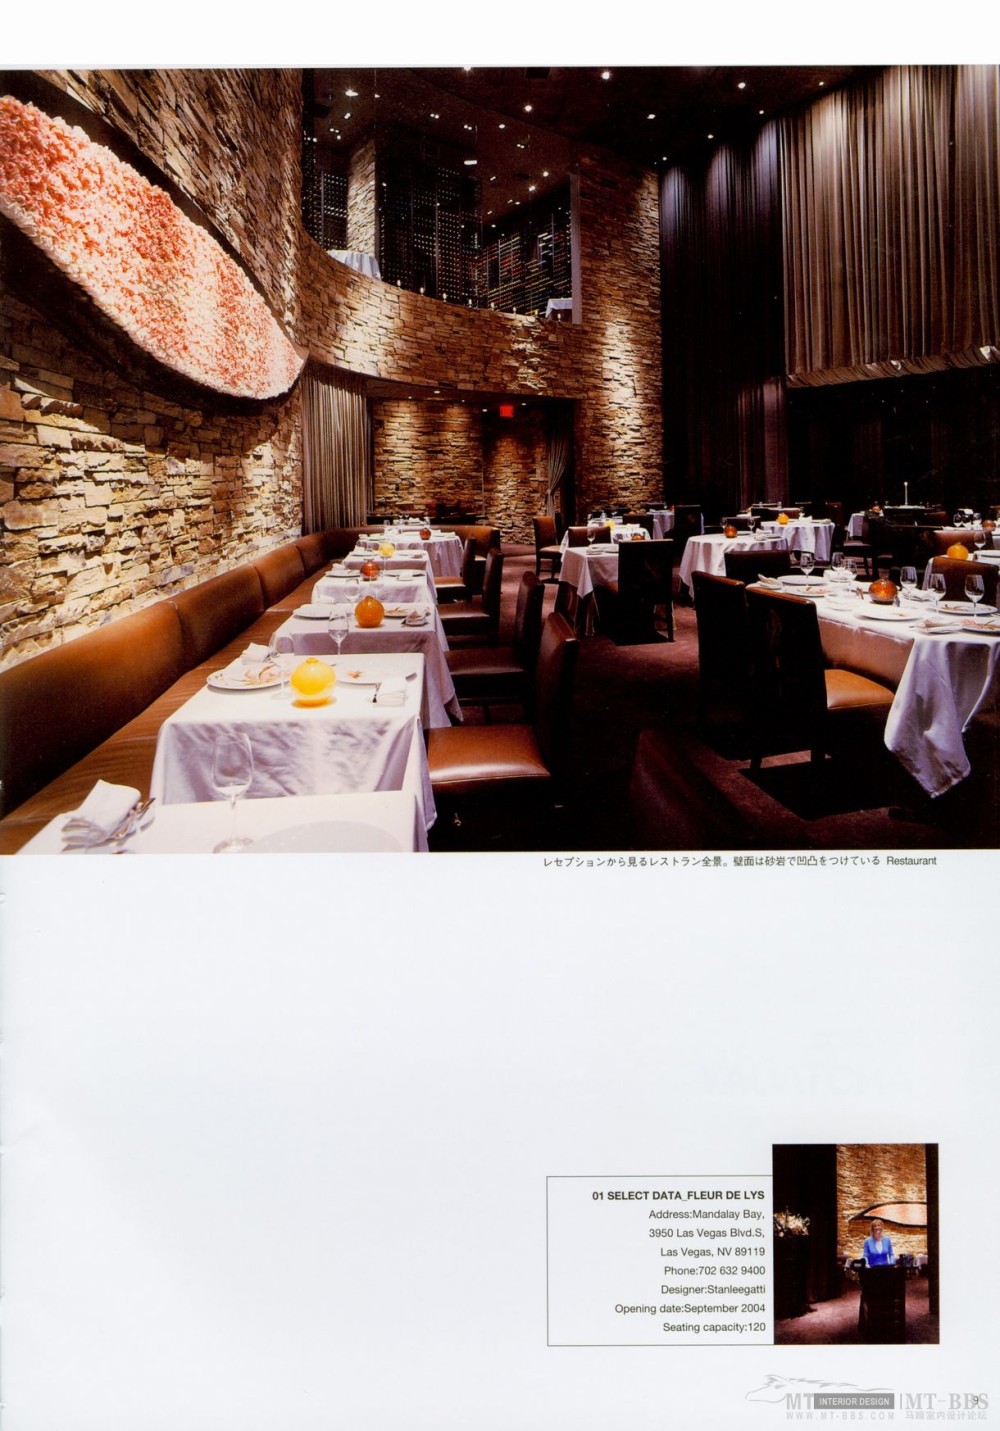 世界餐厅与酒吧设计精选3_009.jpg